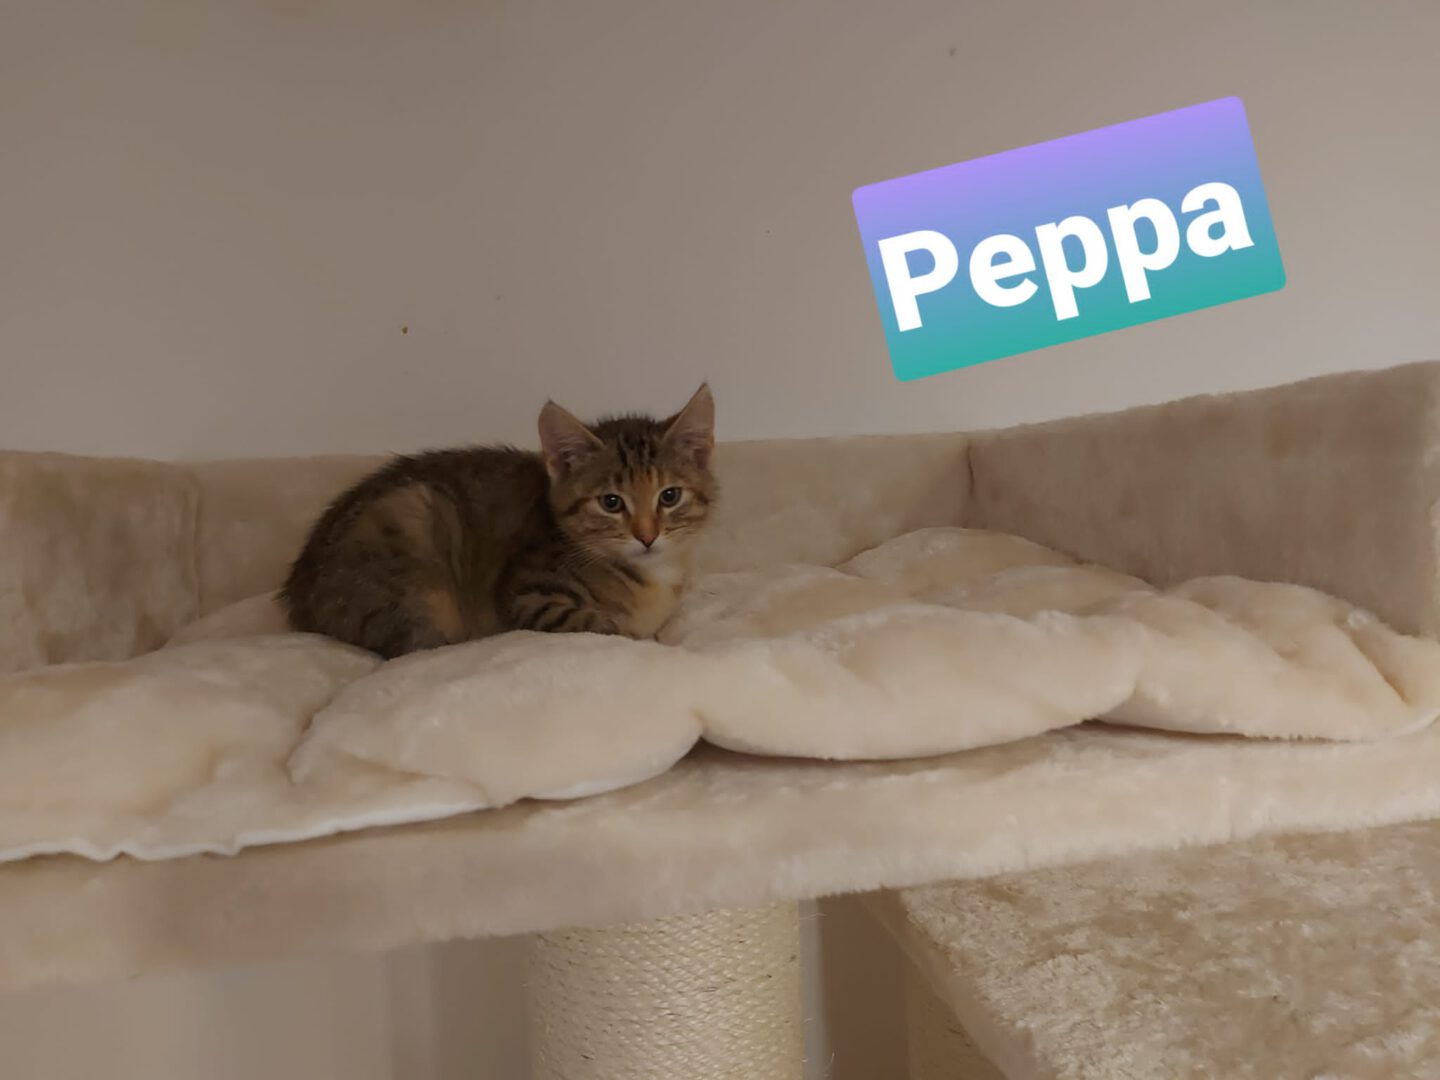 Peppa.JPG (2048×1536)